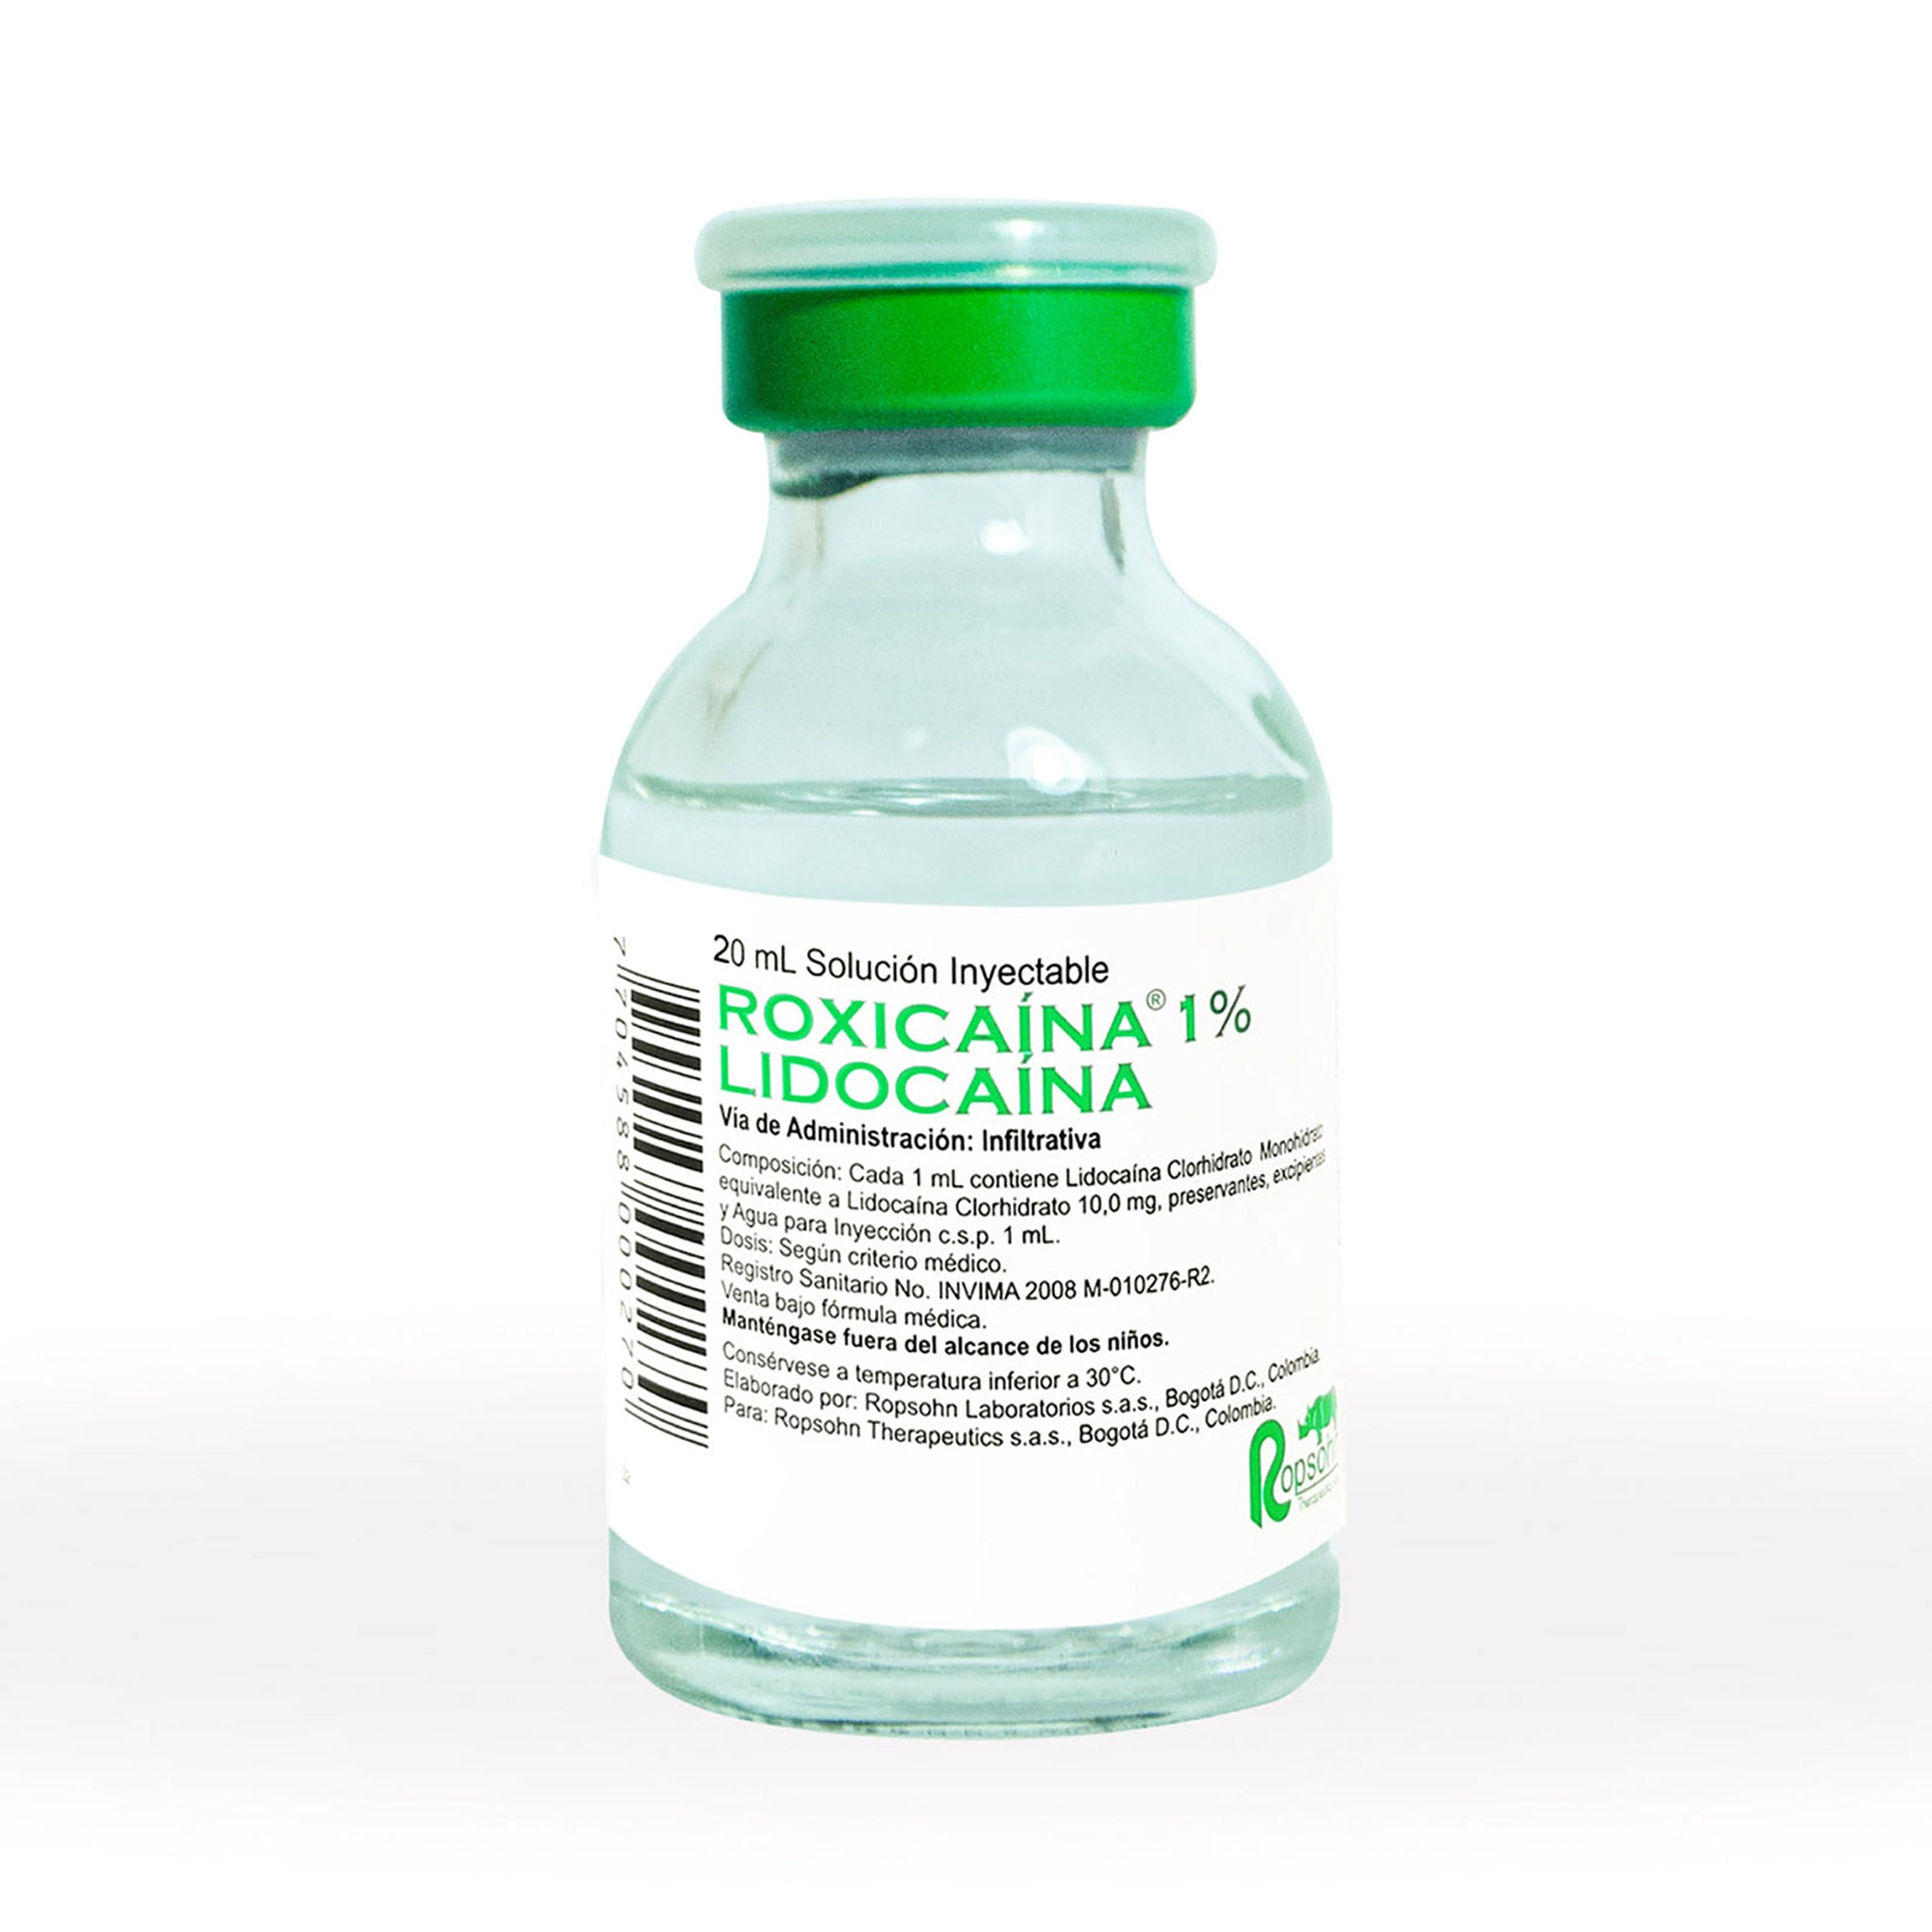 ROXICAINA 1% SIMPLE 20 ML (CG) - Uno A Droguerias